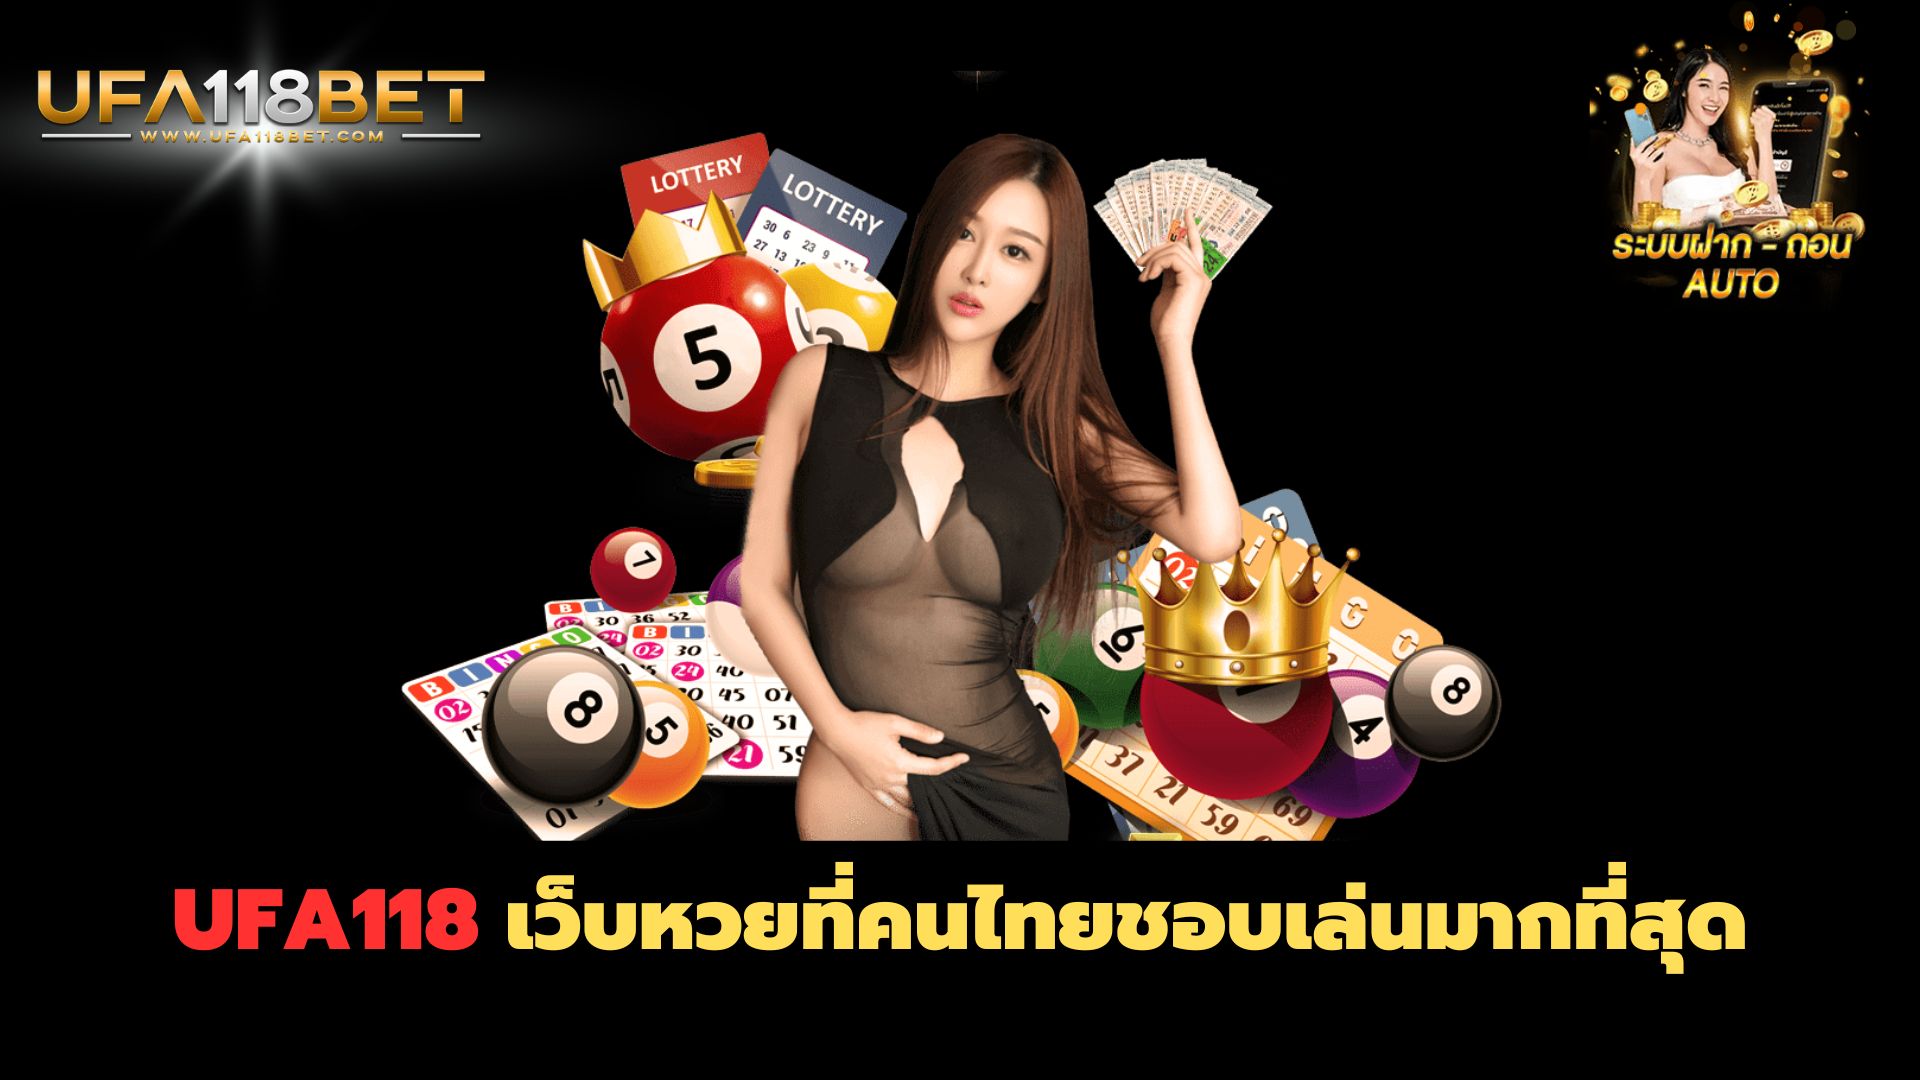 UFA118 เว็บหวยที่คนไทยชอบเล่นมากที่สุด